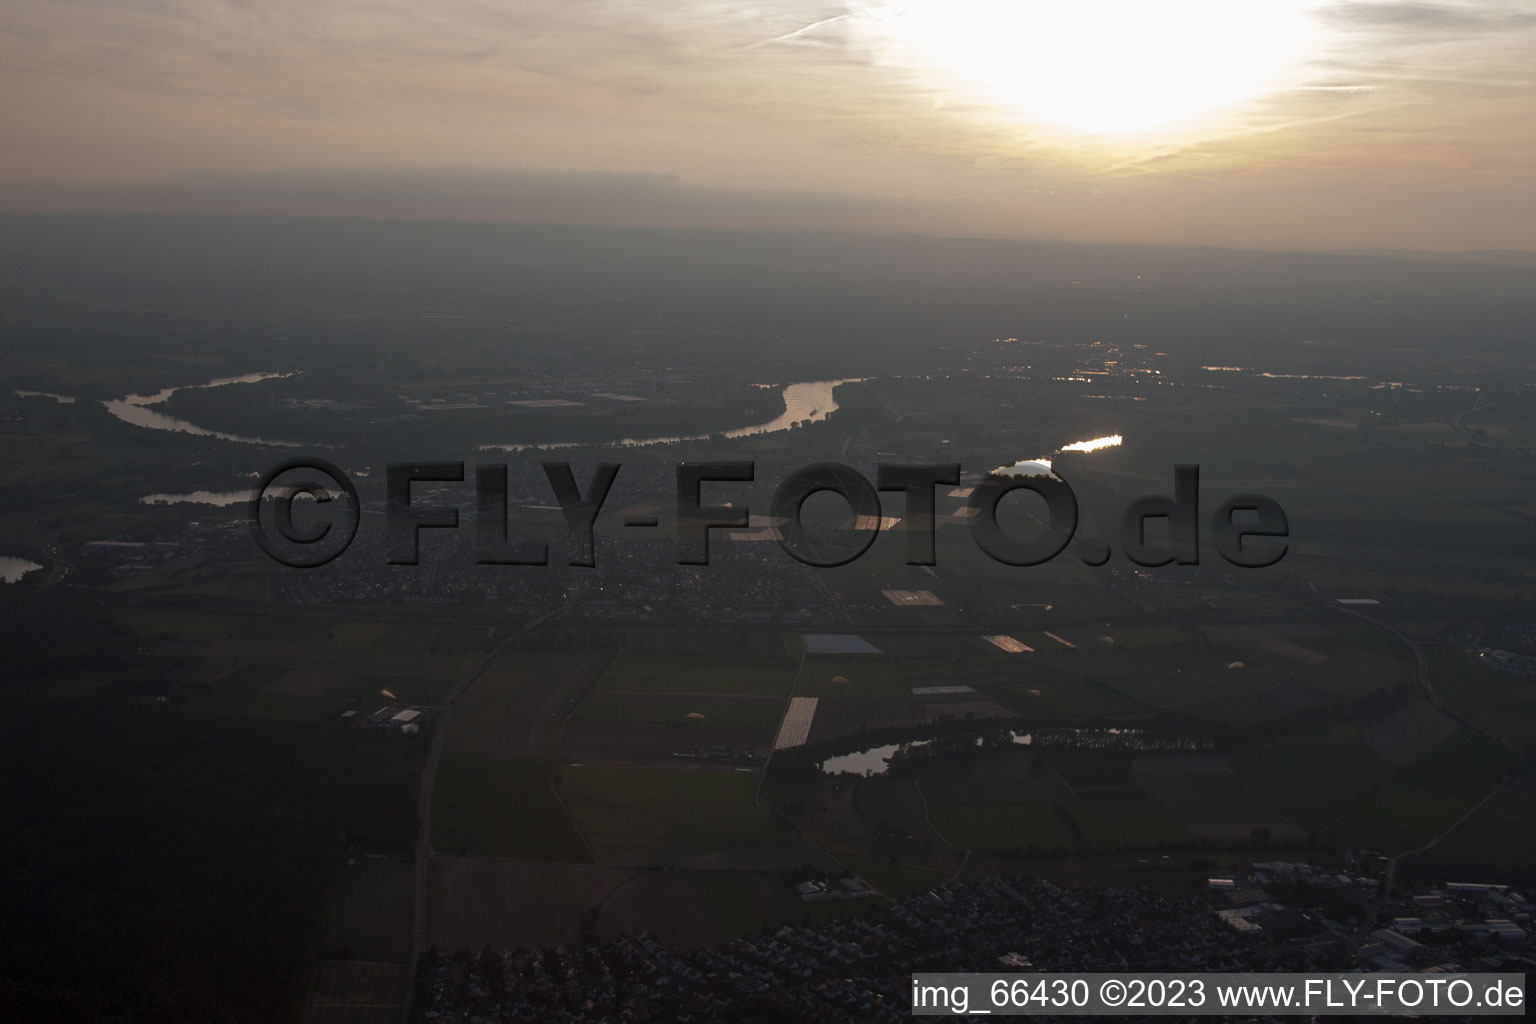 Altlußheim im Bundesland Baden-Württemberg, Deutschland aus der Luft betrachtet